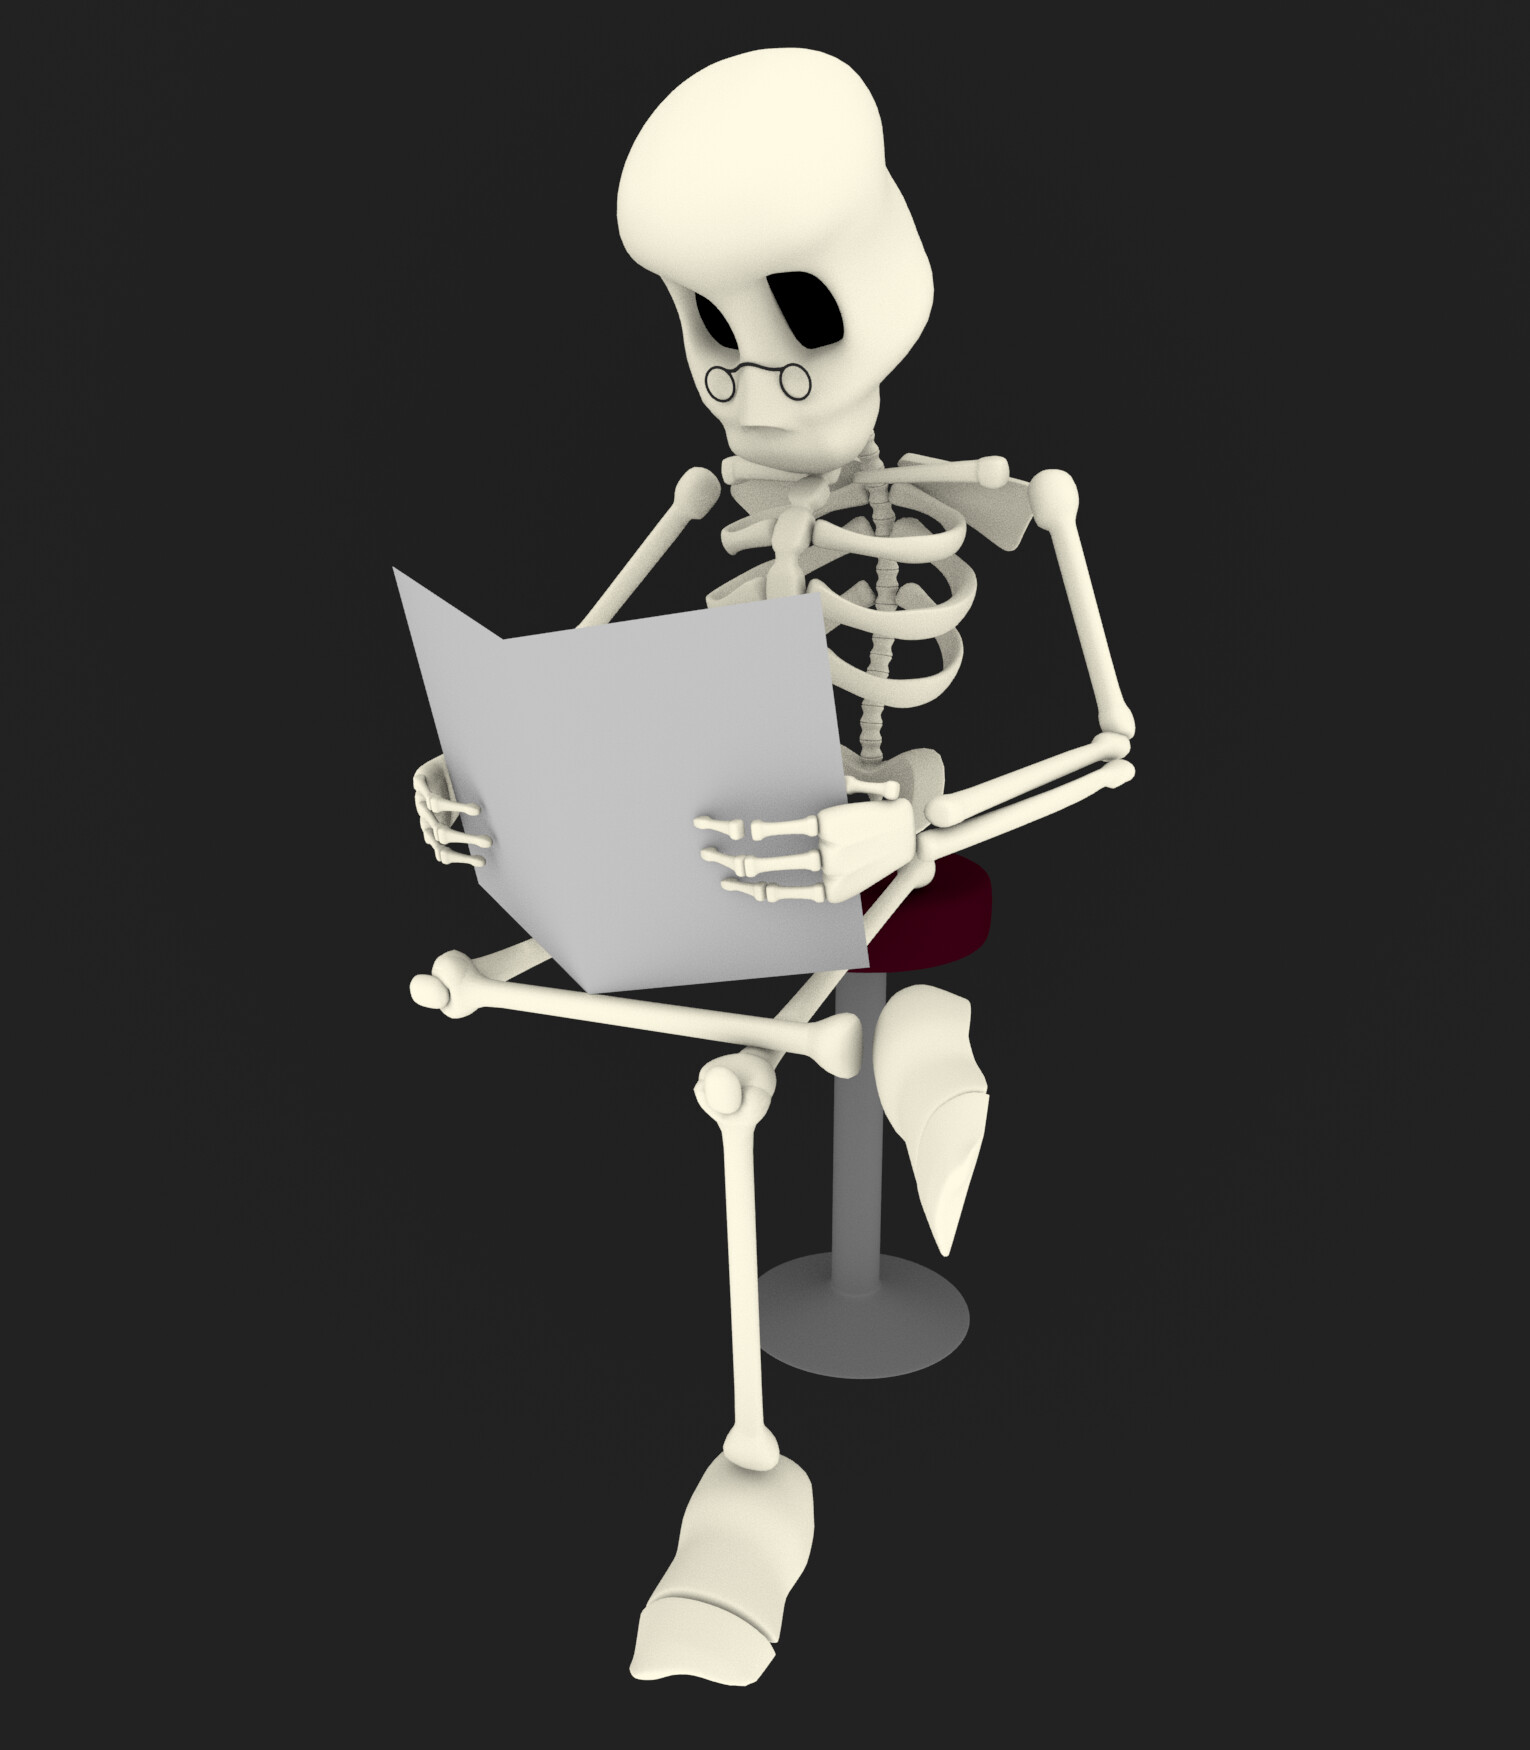 ArtStation - Animated cartoon skeleton